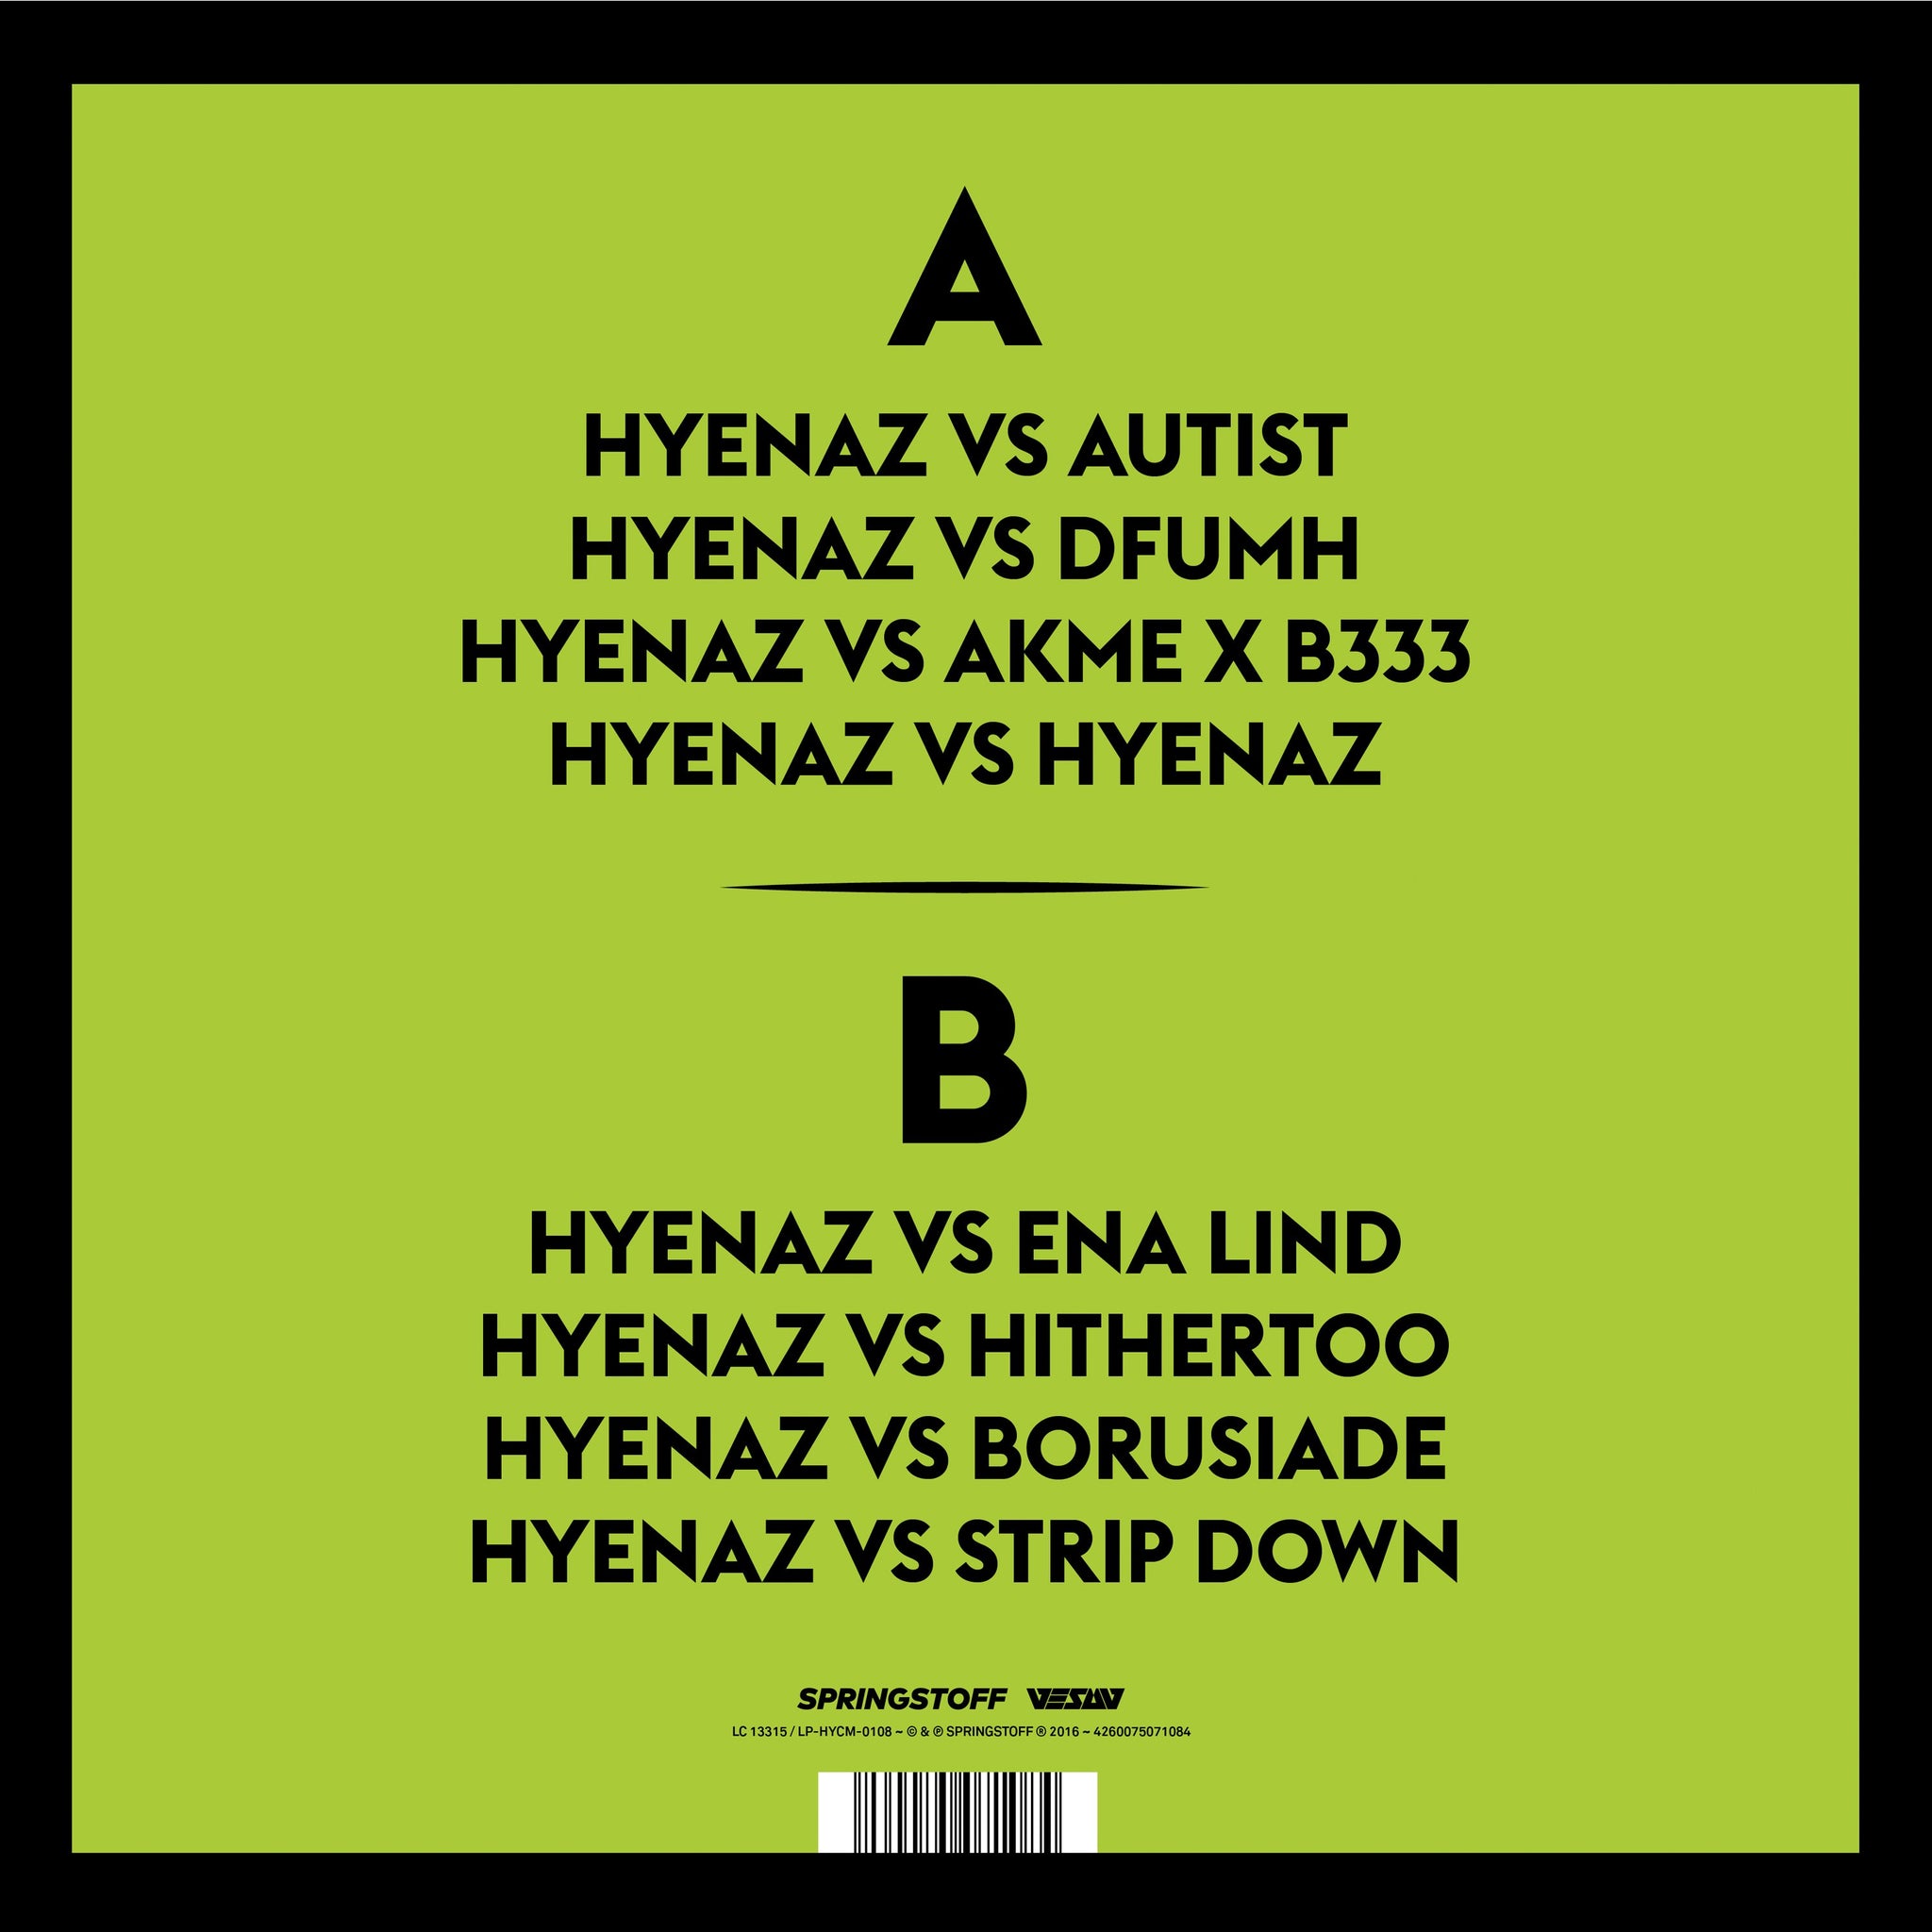 Hyenaz_Rs_vinyl_3000x3000